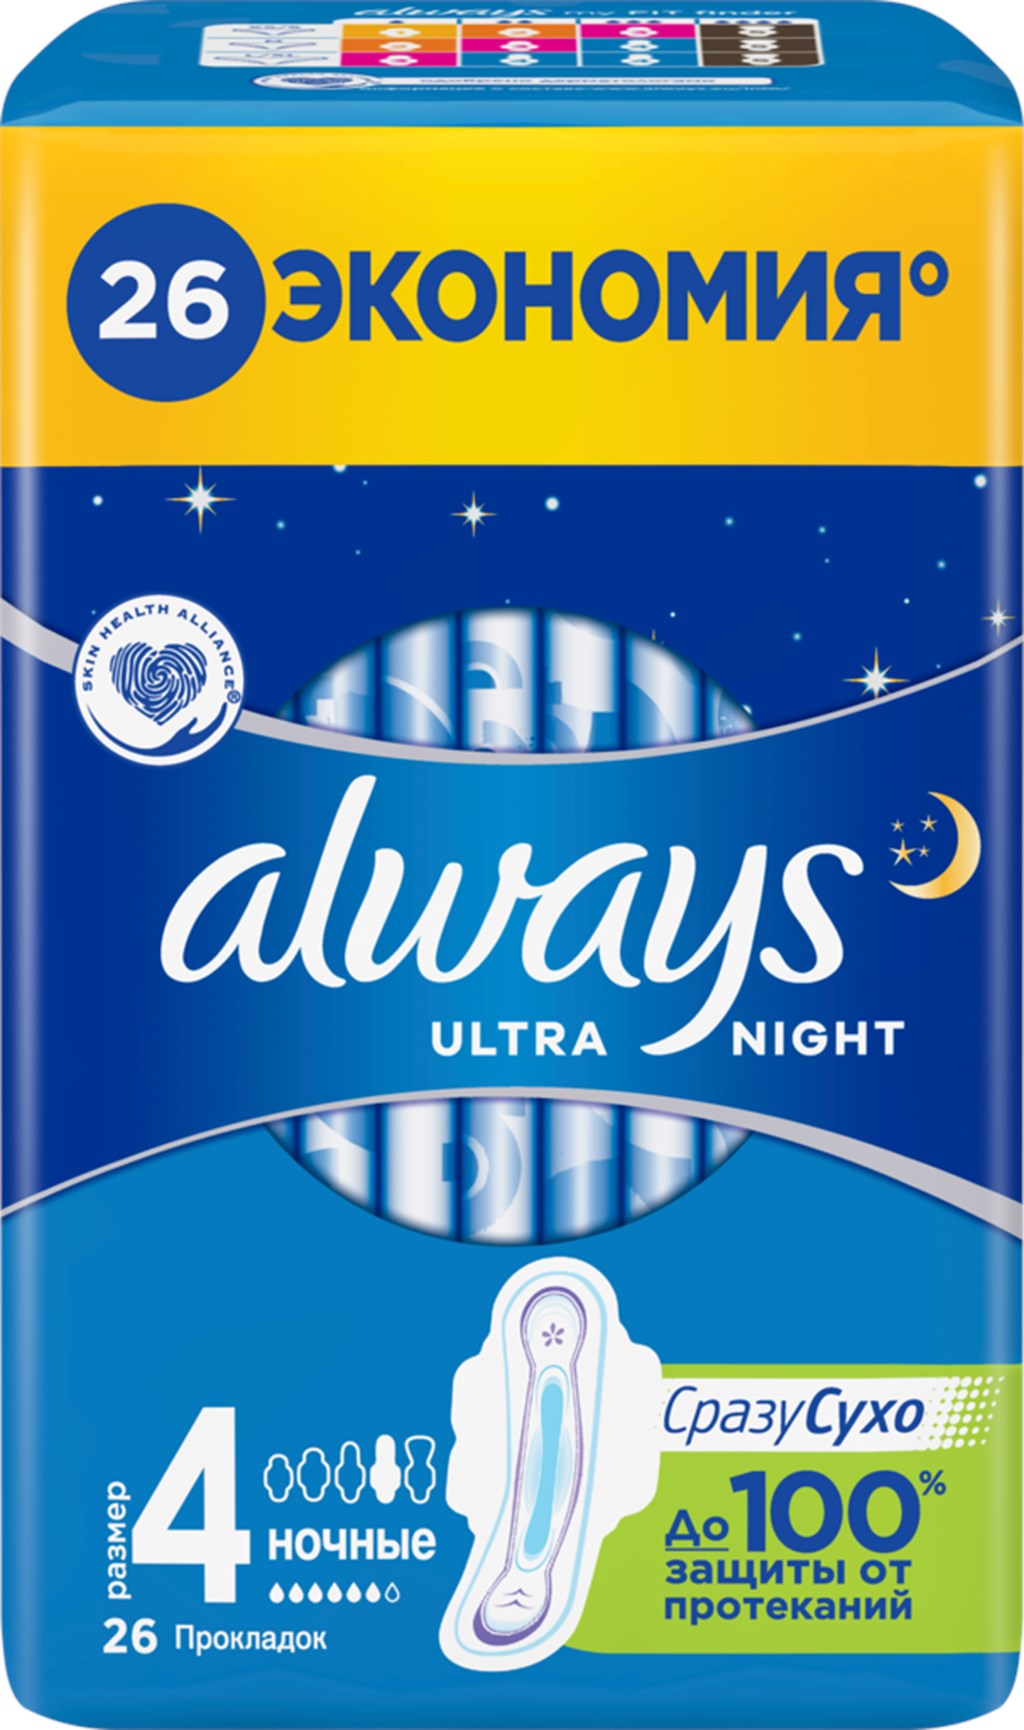 Прокладки ночные ALWAYS Ultra Night, с крылышками, 26шт